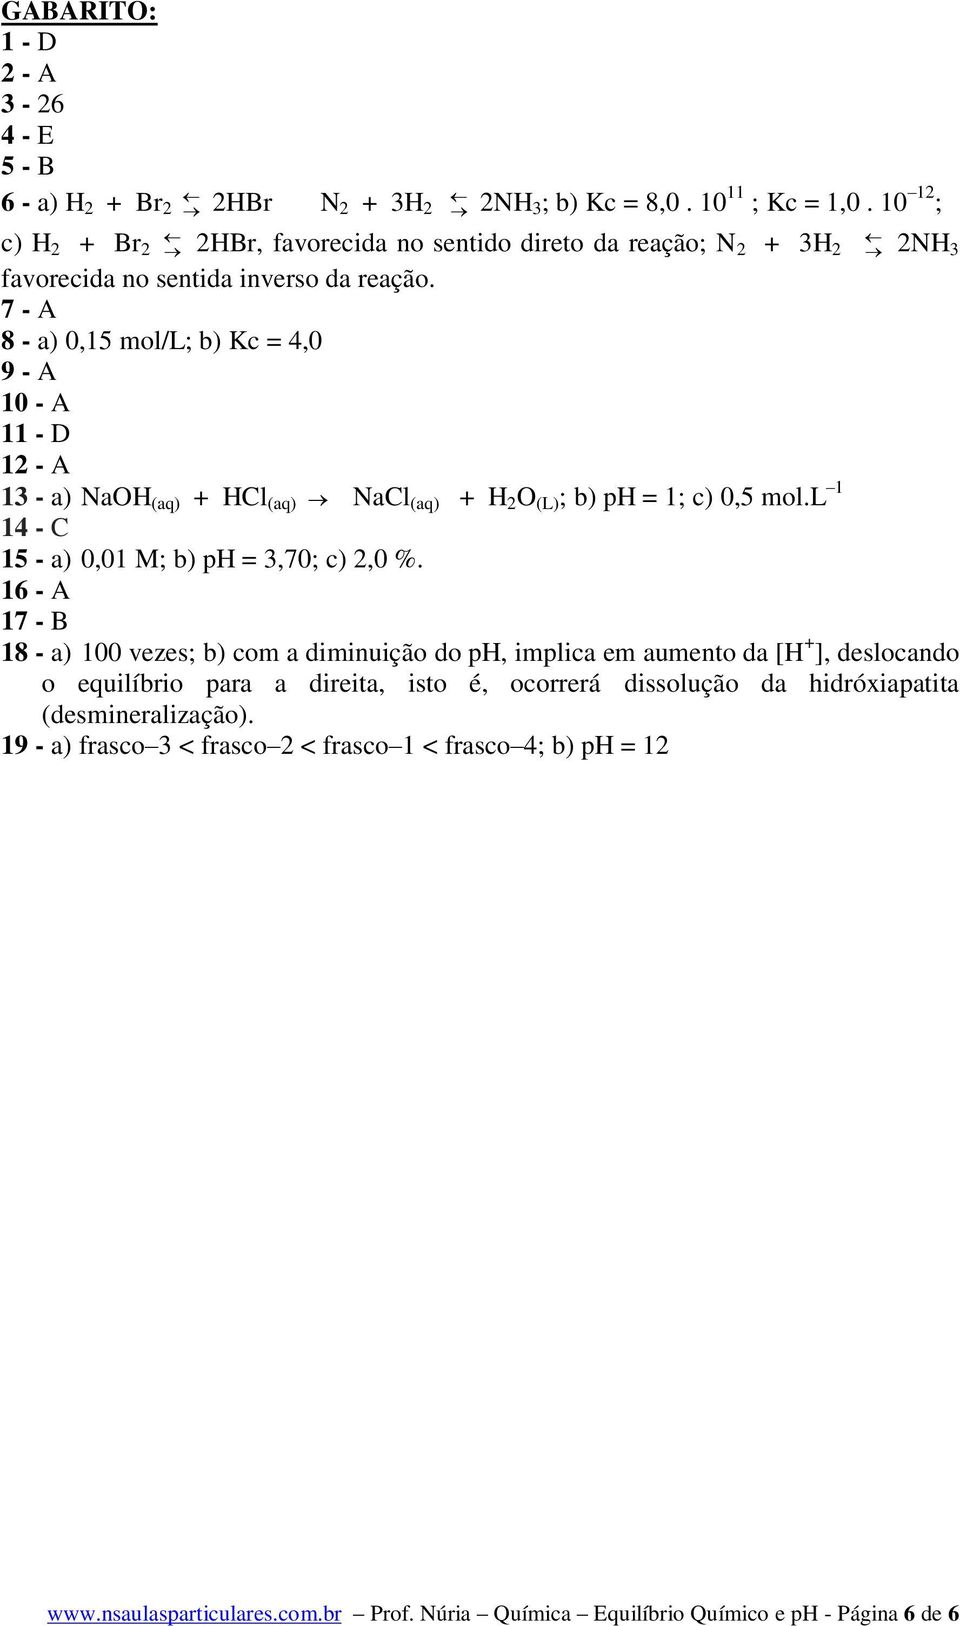 7 - A 8 - a) 0,15 mol/l; b) Kc = 4,0 9 - A 10 - A 11 - D 12 - A 13 - a) NaOH (aq) + HCl (aq) NaCl (aq) + H 2 O (L) ; b) ph = 1; c) 0,5 mol.l 1 14 - C 15 - a) 0,01 M; b) ph = 3,70; c) 2,0 %.